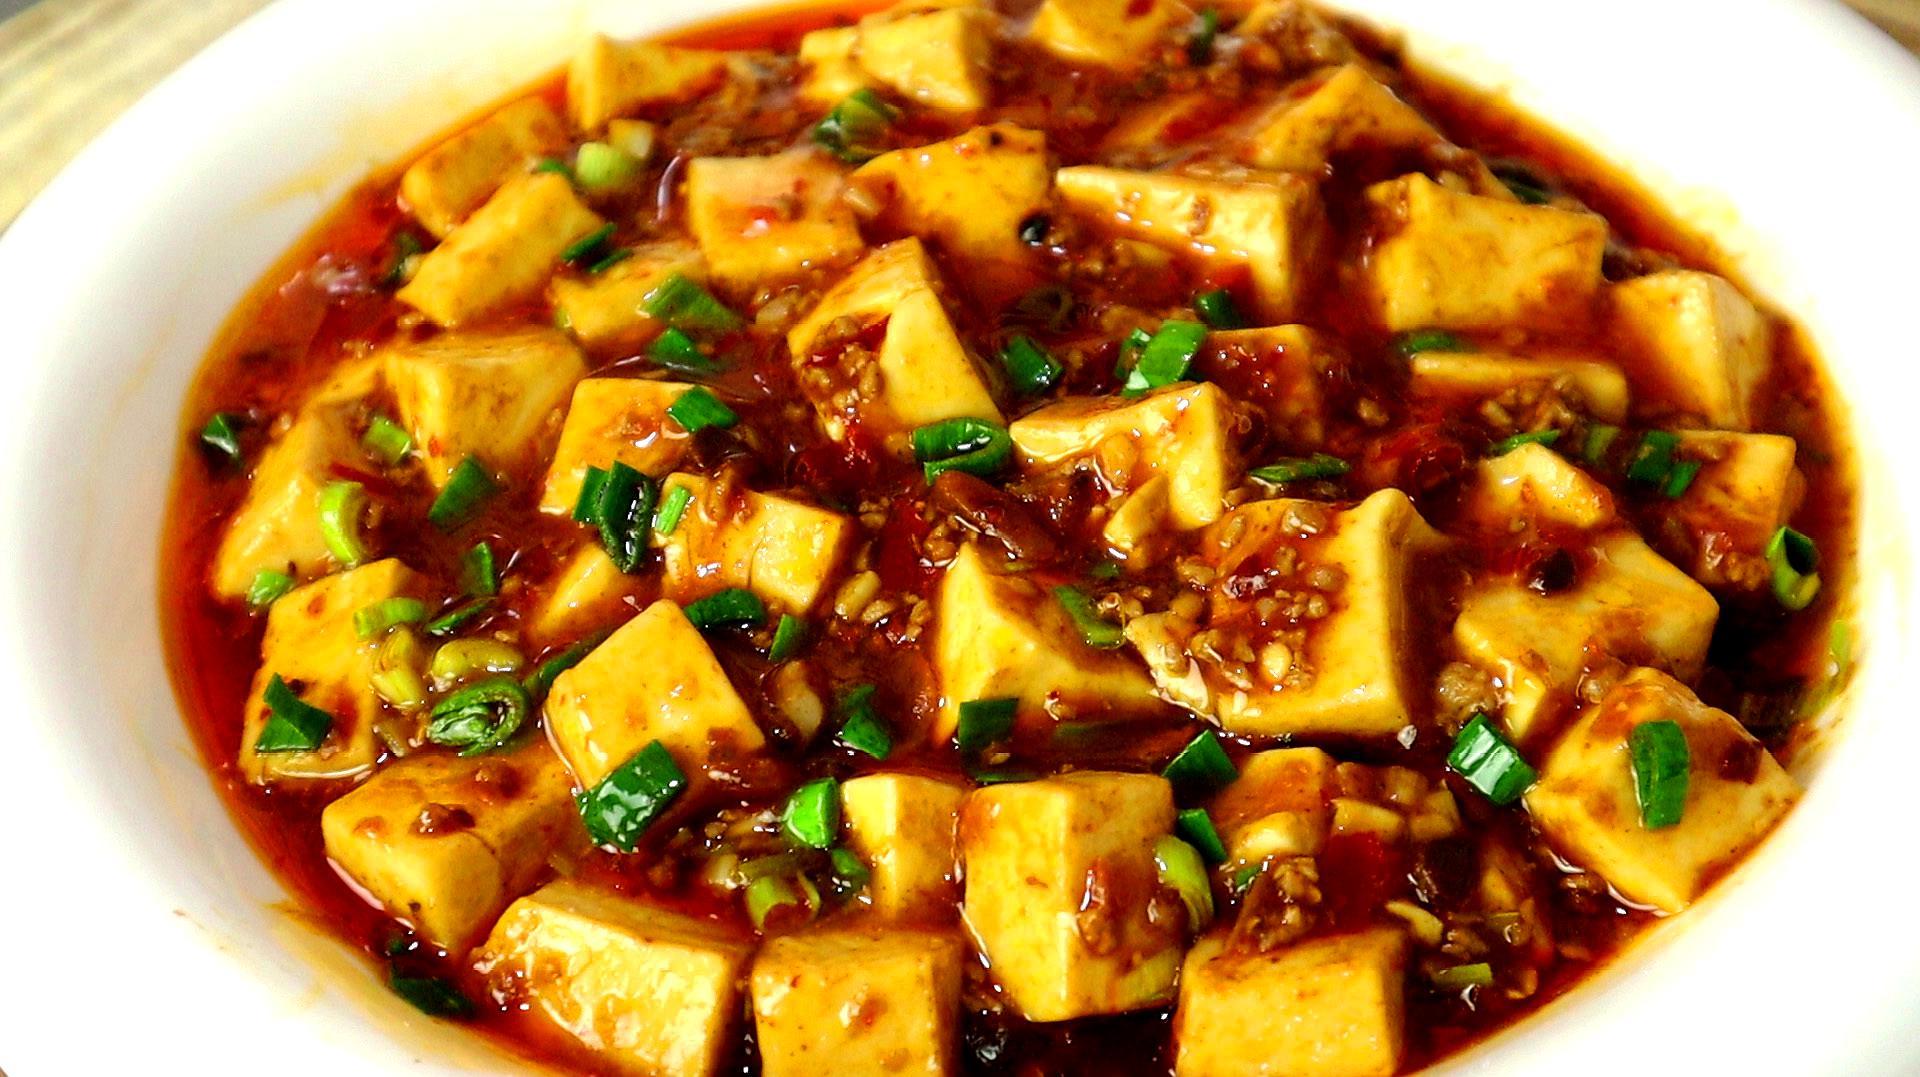 麻婆豆腐原来这么简单,大厨教你诀窍,香嫩入味,麻辣过瘾超好吃